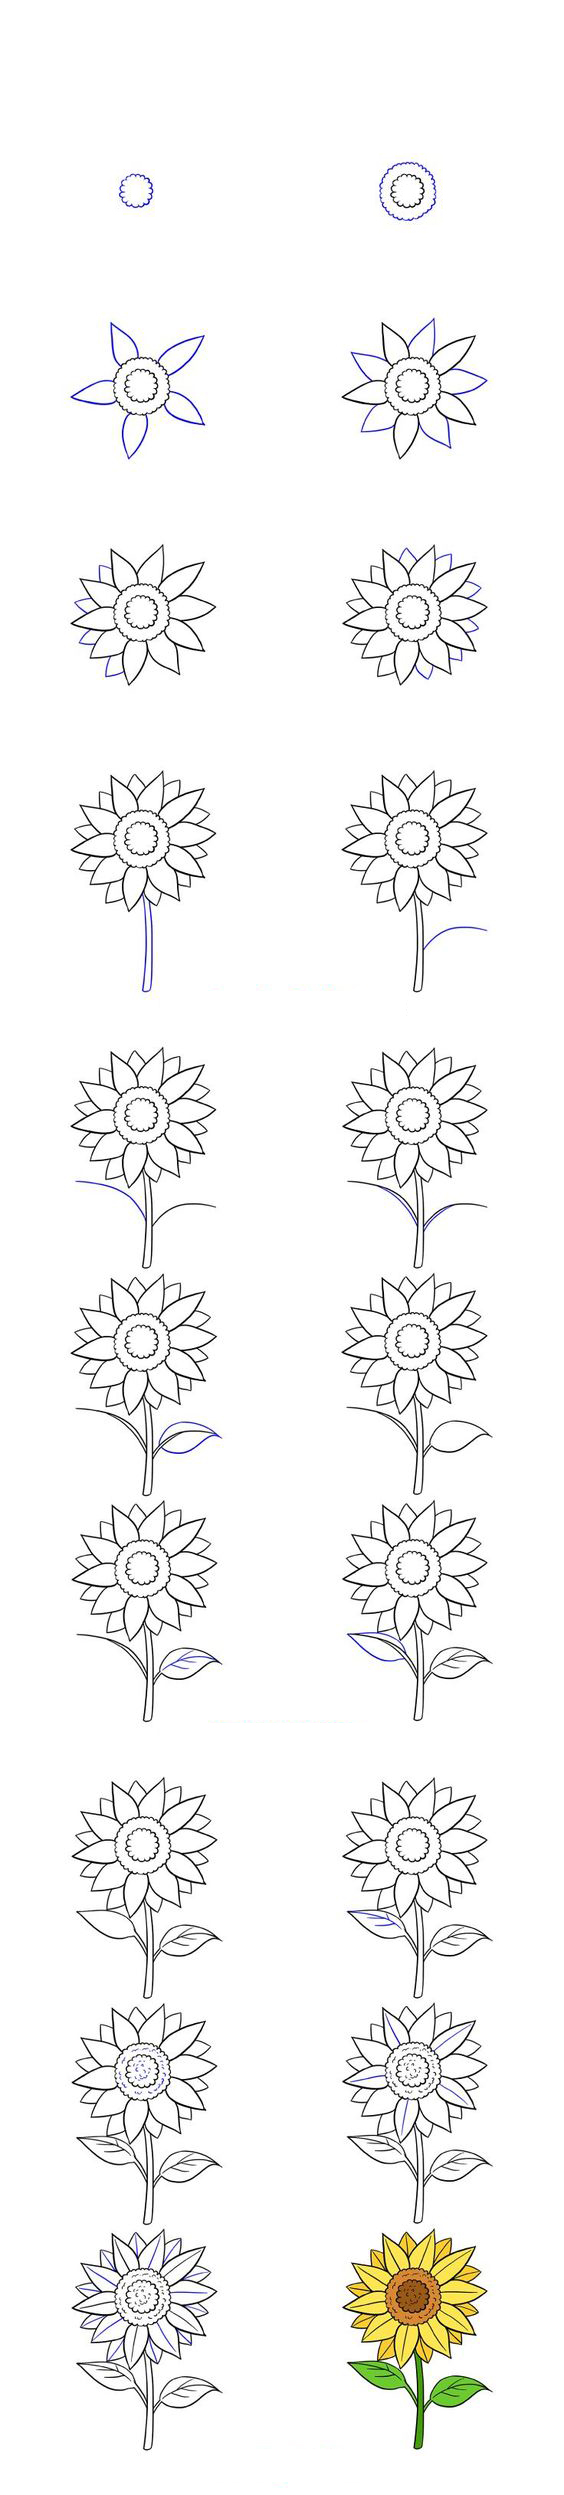 الرسم للمبتدئين طريقة سهلة لرسم دوار الشمس خطوة بخطوة - تعلم الرسم